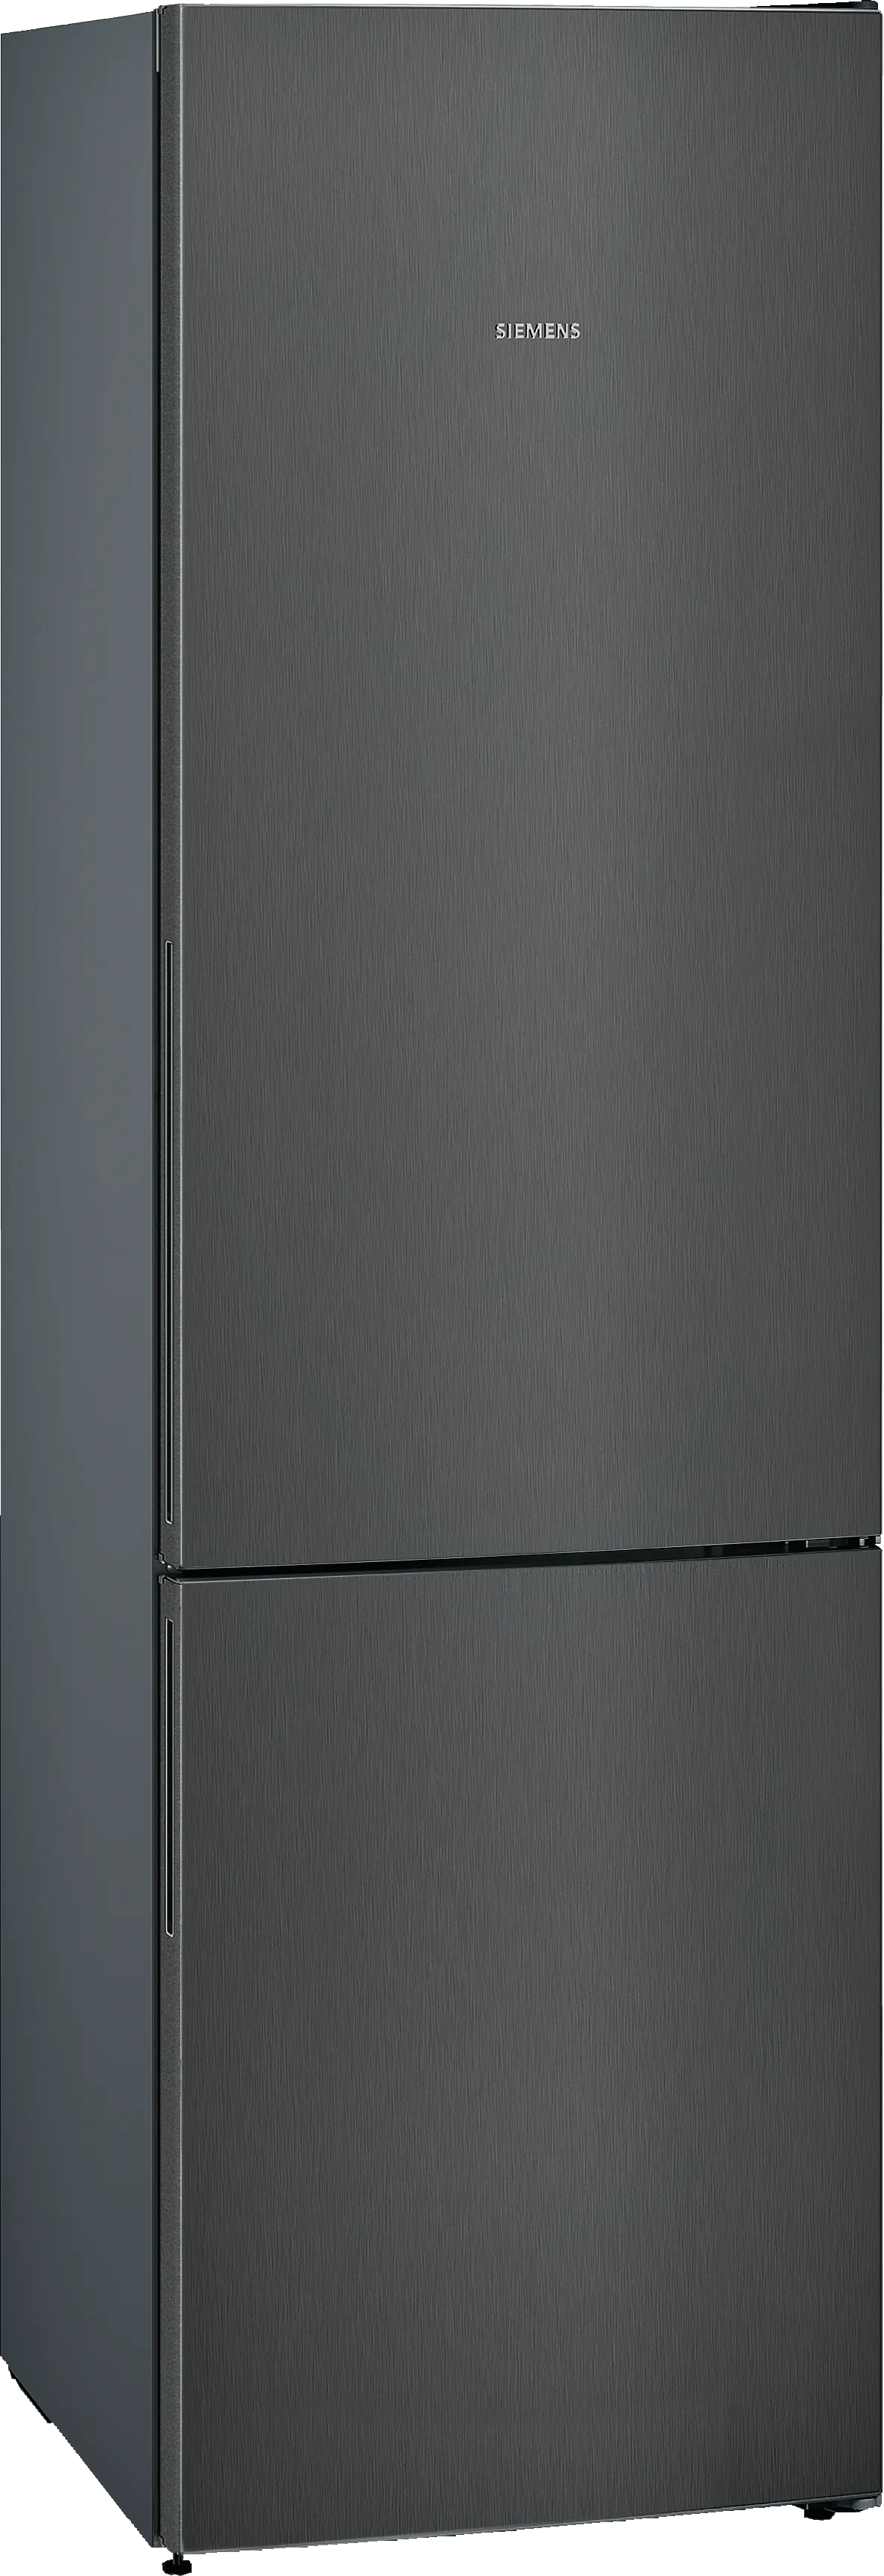 iQ500 Vrijstaande koel-vriescombinatie met bottom-freezer 201 x 60 cm Zwart geborsteld staal antiFingerprint 